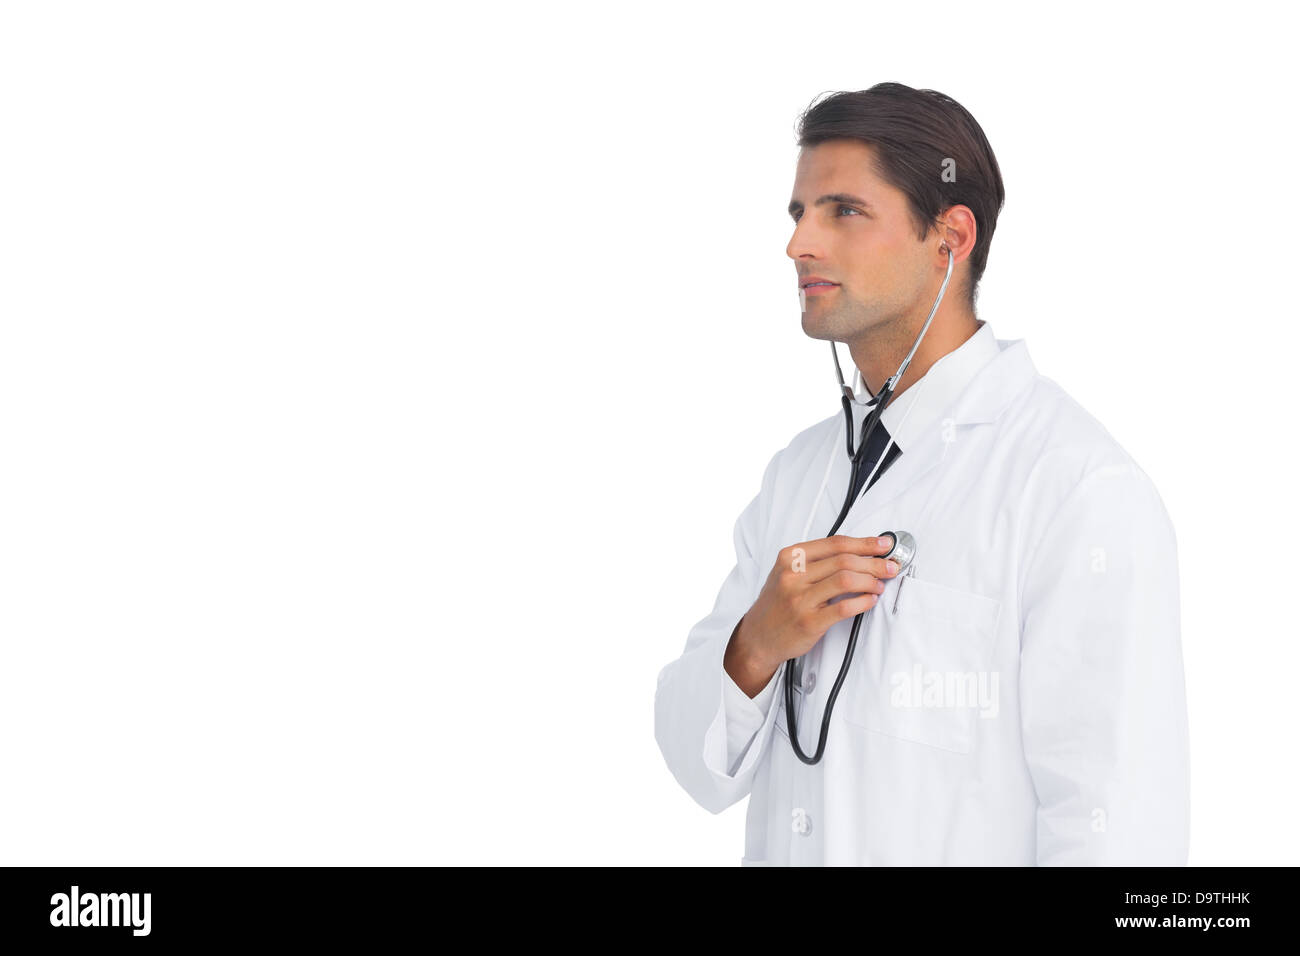 De graves doctor holding stethoscope jusqu'à sa poitrine Banque D'Images